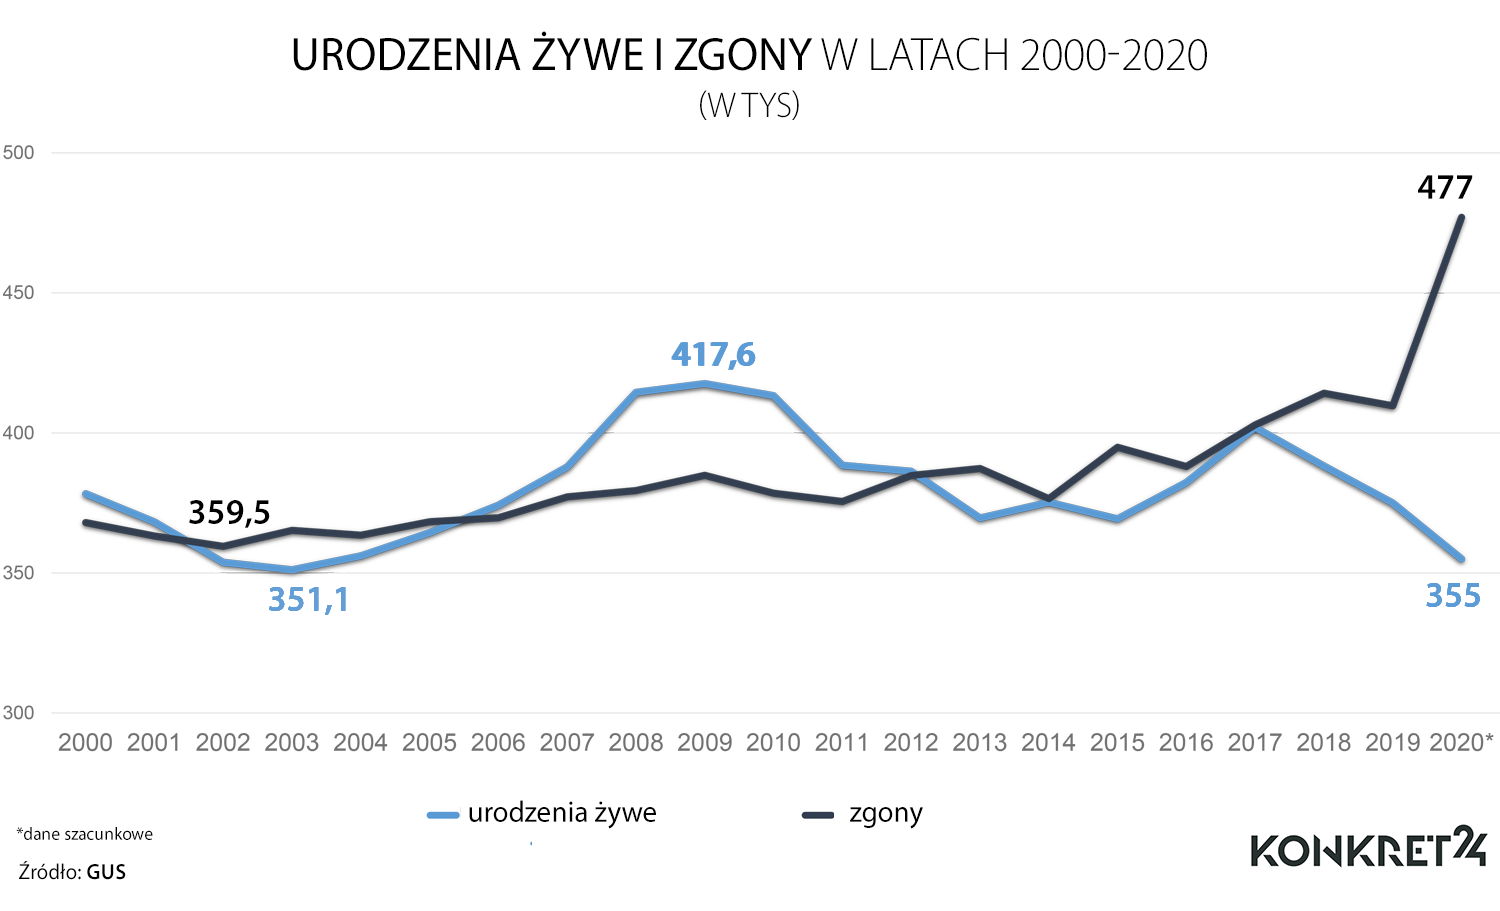 Około 122 tys. więcej zgonów niż urodzeń było w Polsce w 2020 roku